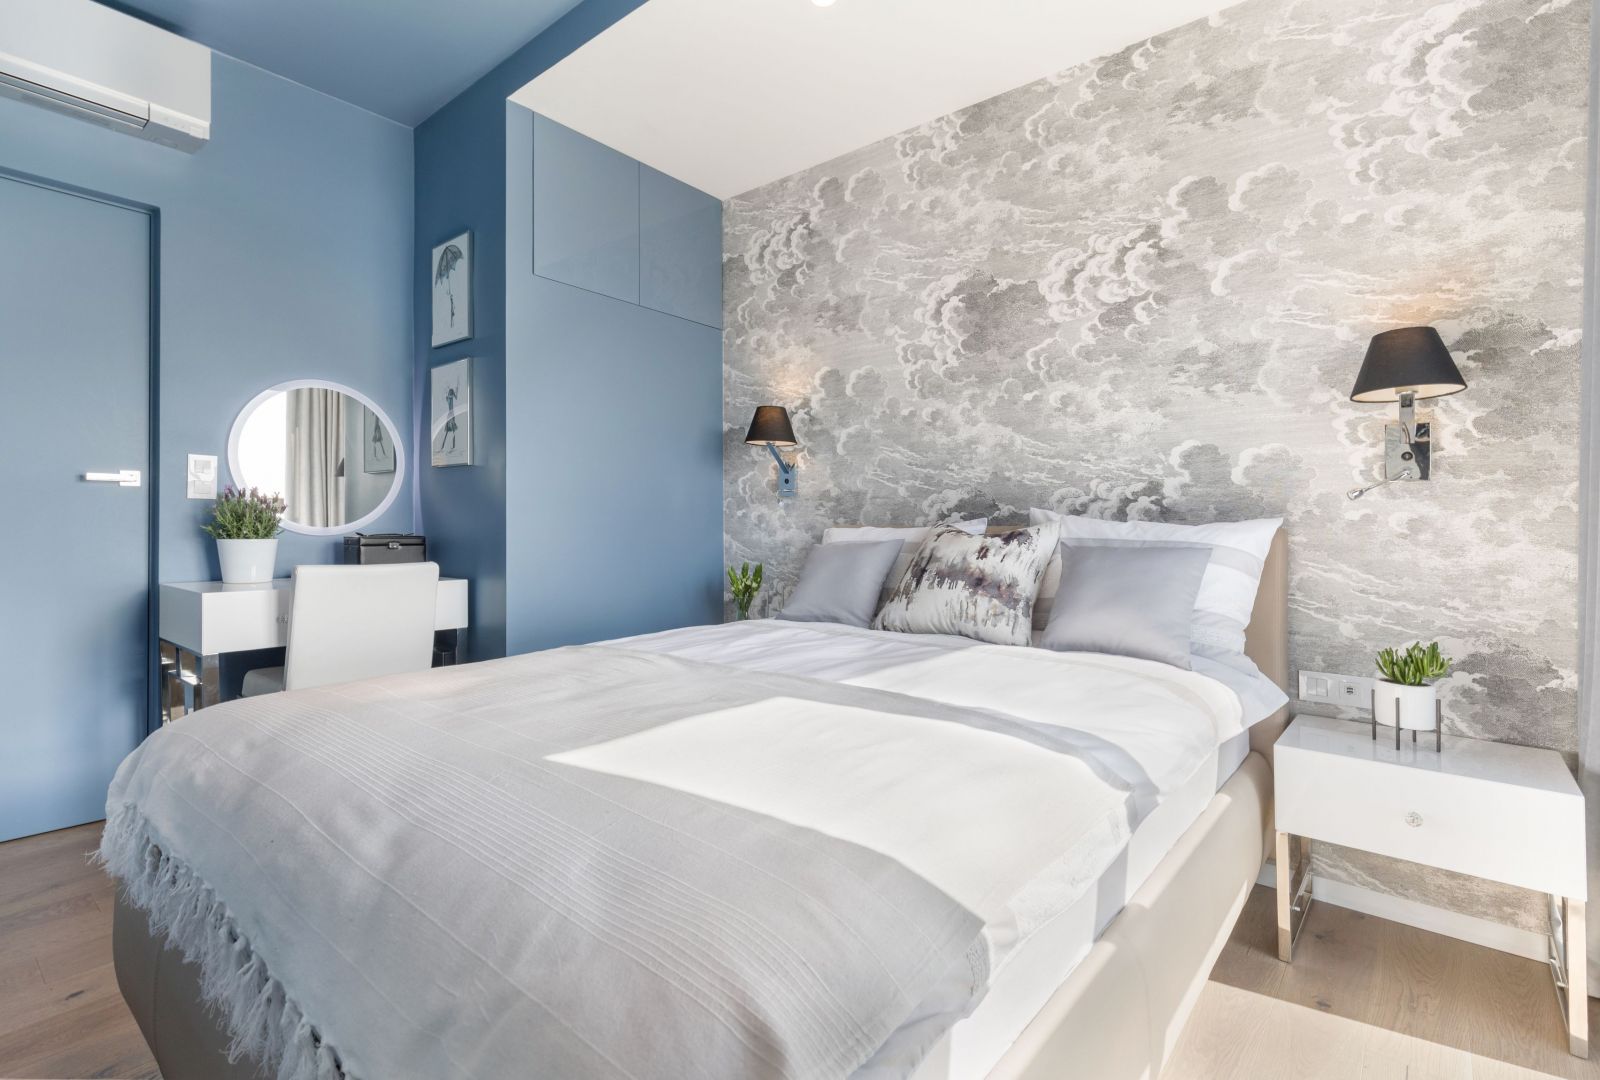 Dekoracyjna tapera w jasnych stonowanych kolorach zdobi ścianę za łóżkiem. Projekt i zdjęcia Monika Staniec 